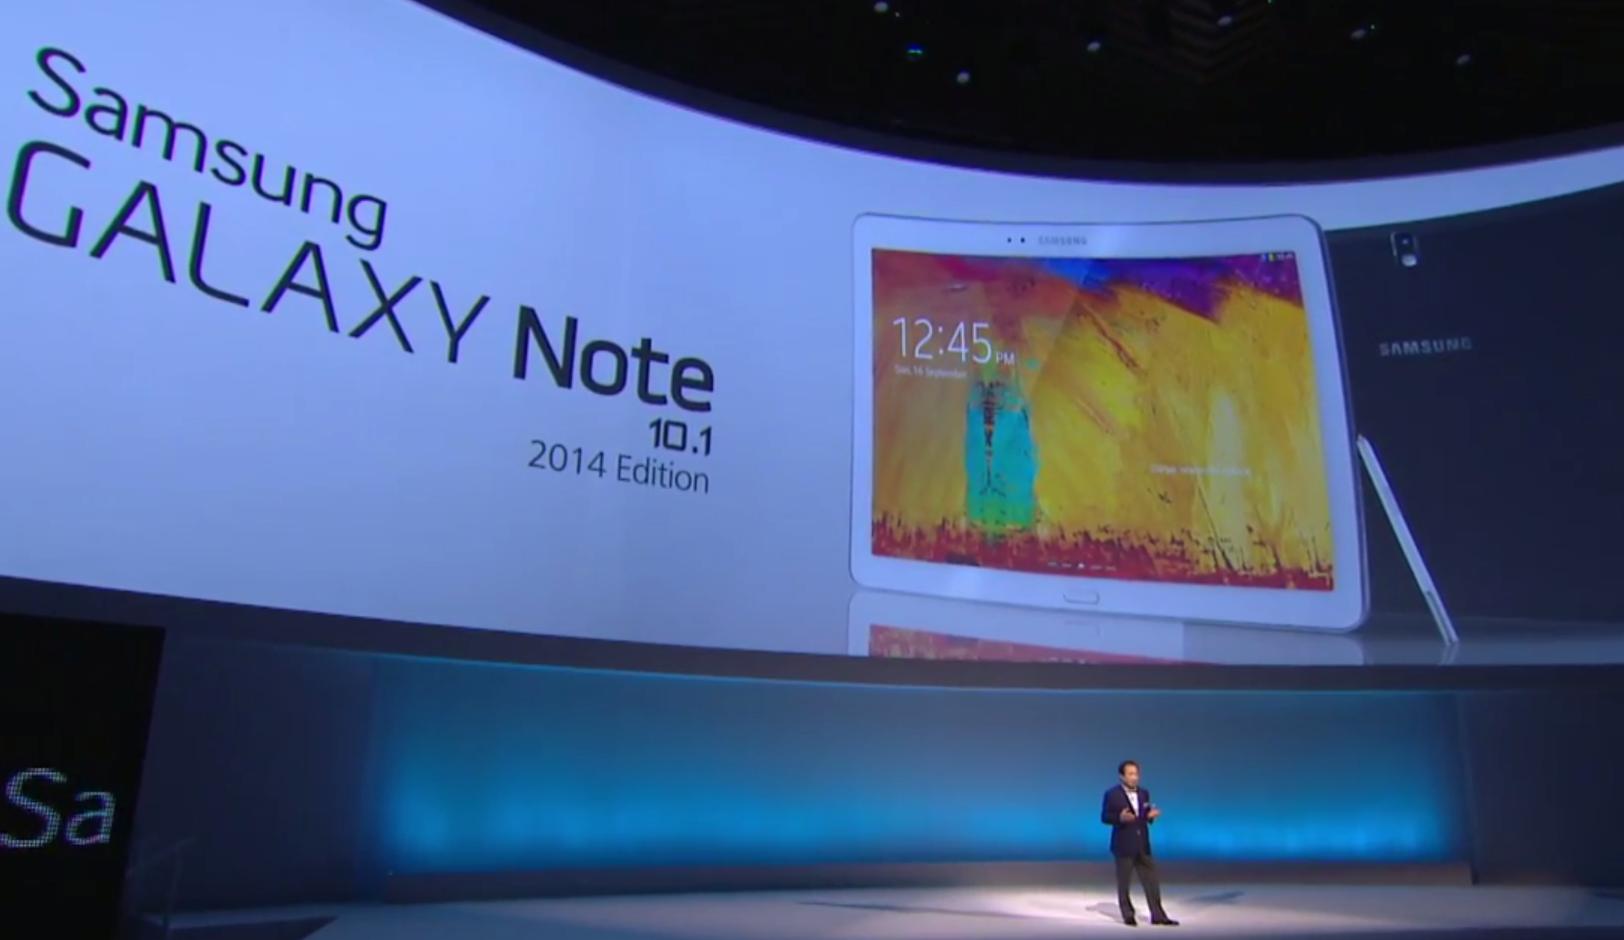 Samsung представила новые устройства на IFA 2013